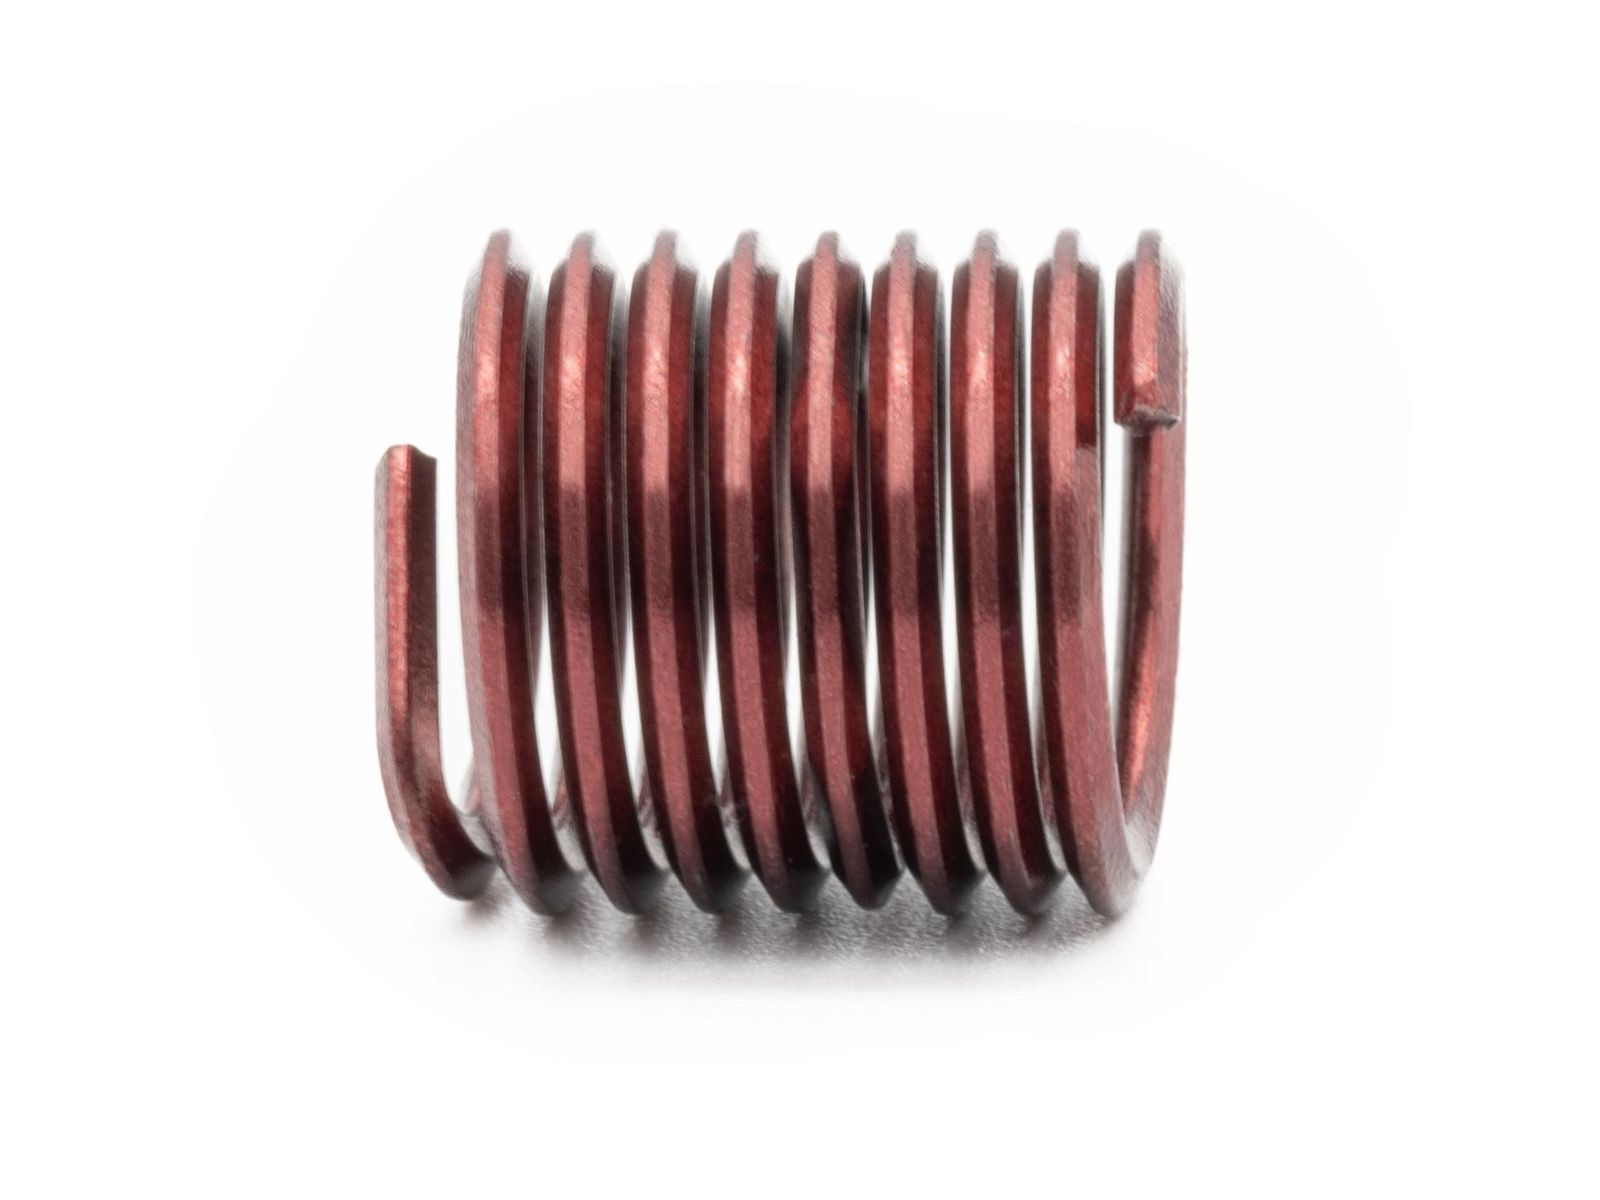 BaerCoil Wire Thread Inserts M 10 x 1.5 - 1.5 D (15 mm) - screw grip (screw locking) - 10 pcs.